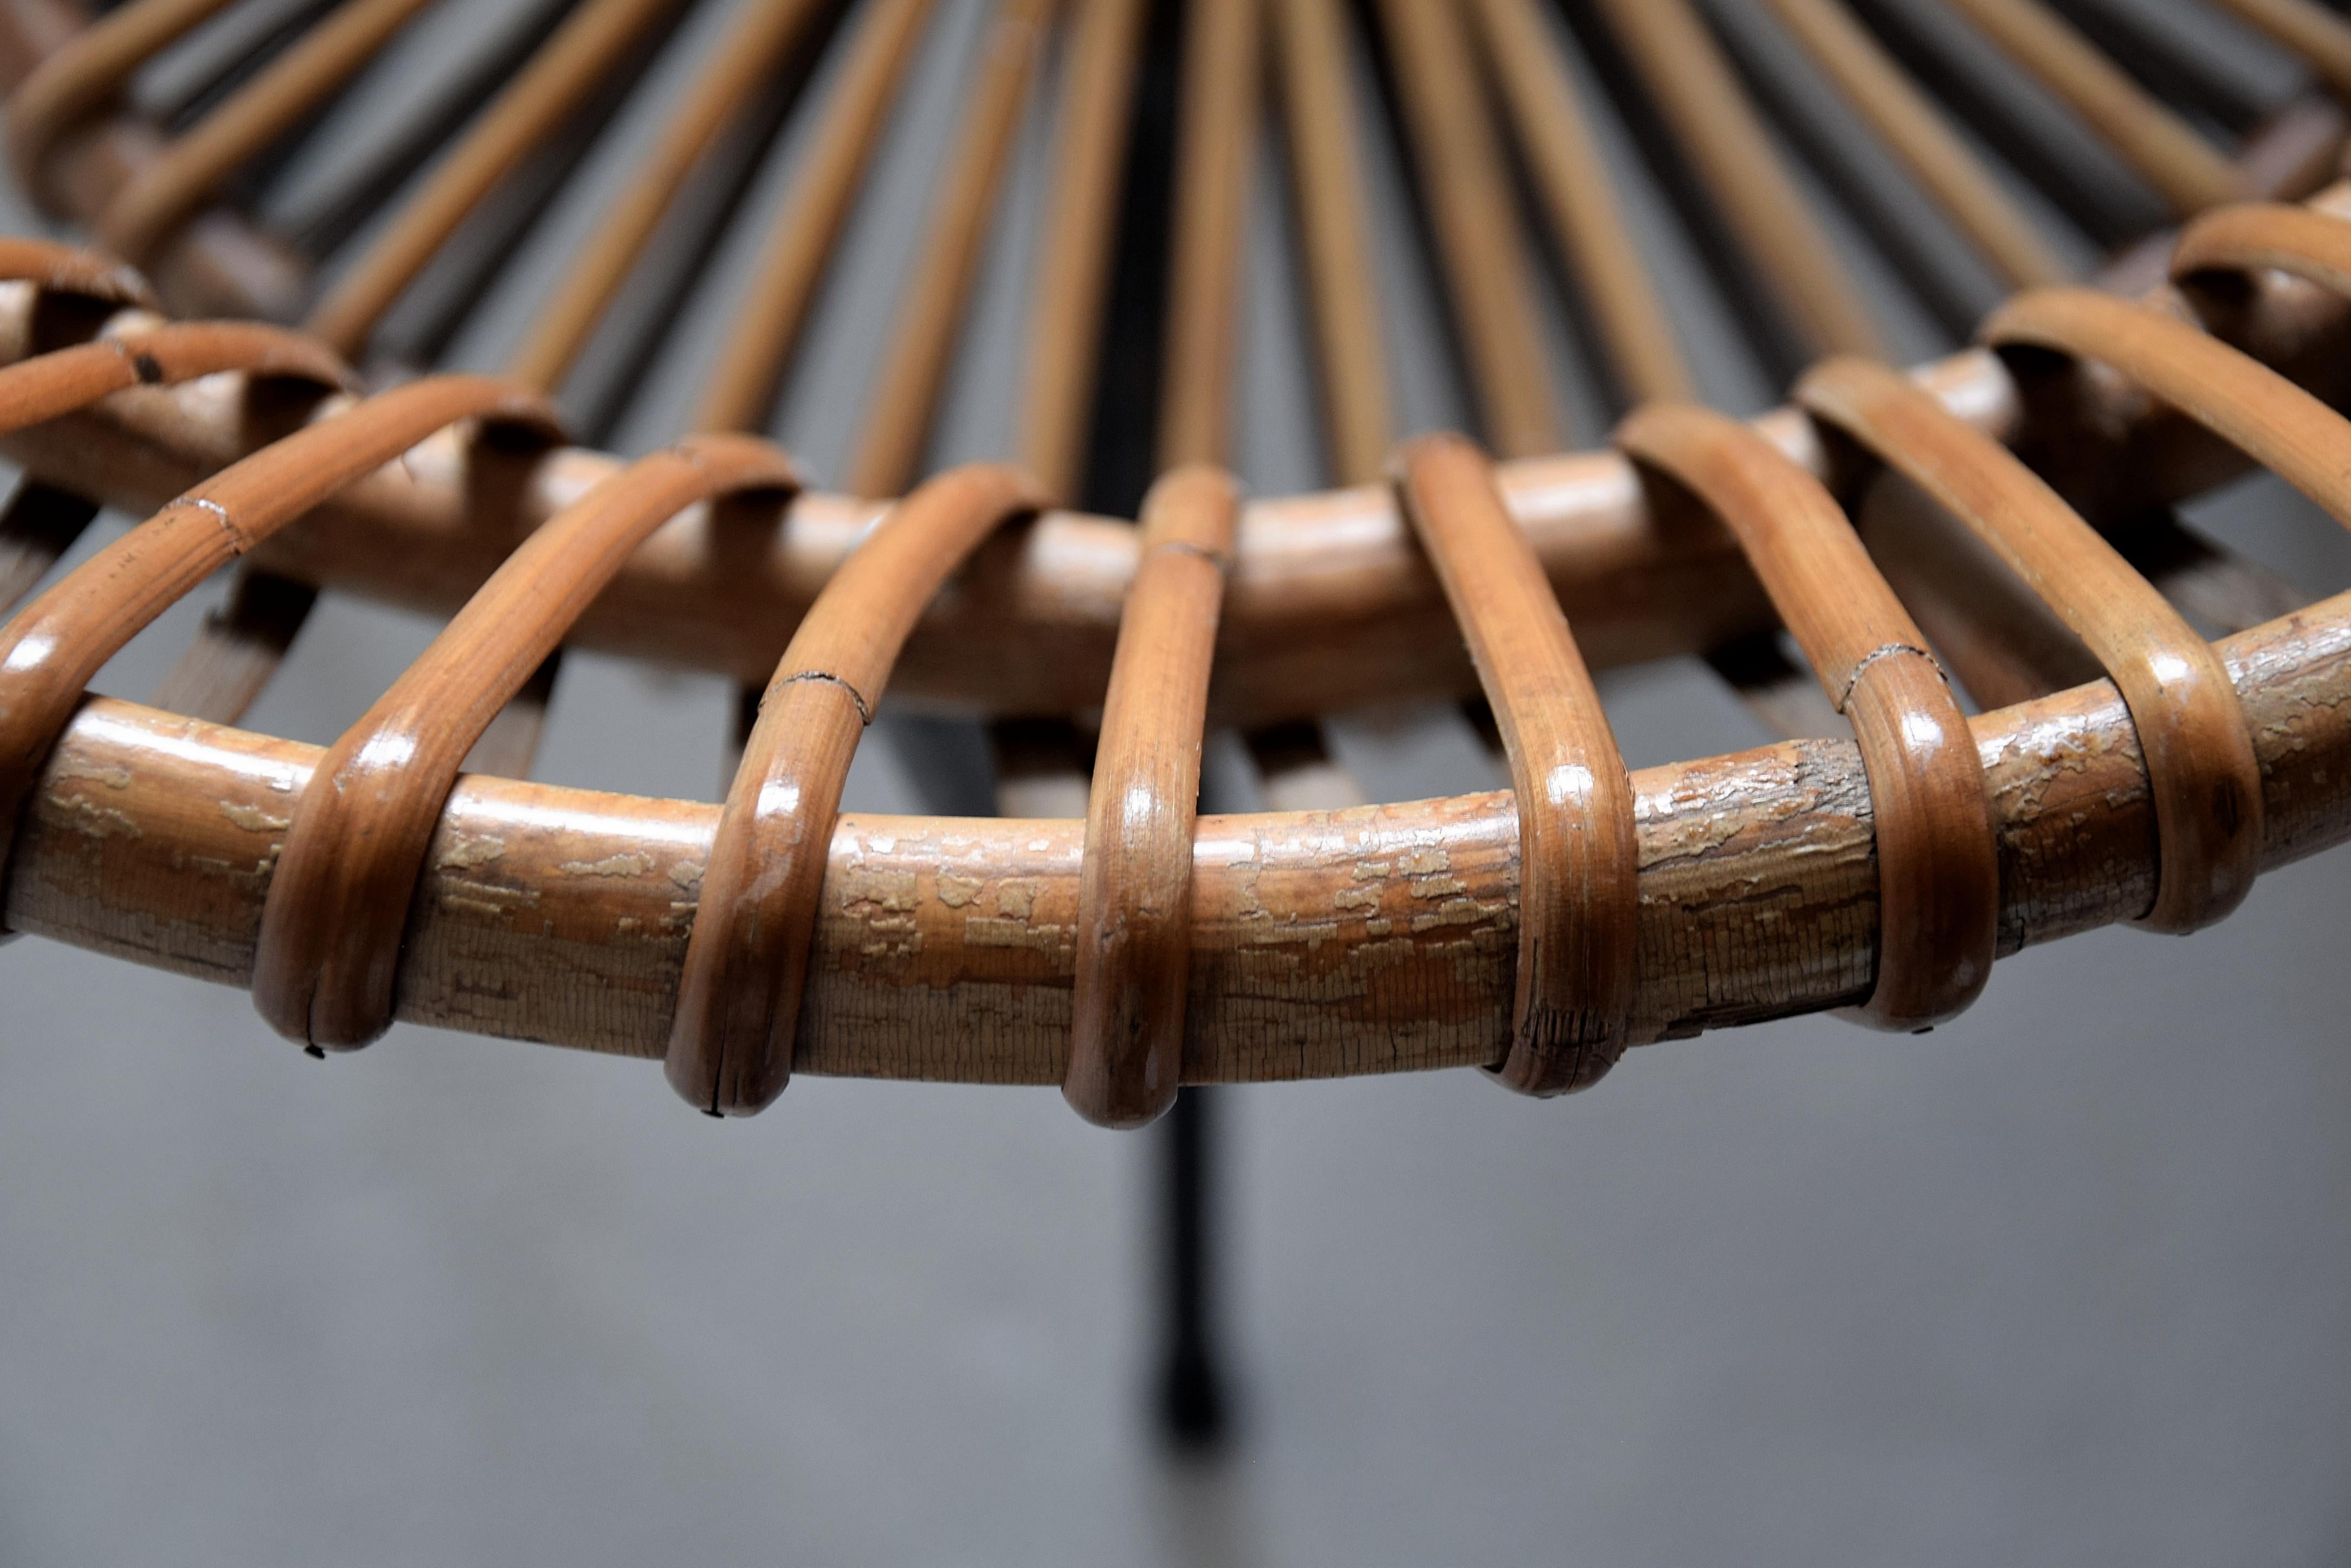 Stilvoller und eleganter Stuhl aus der Mitte des Jahrhunderts aus schwarz lackiertem Eisen und Rattan, entworfen von Dirk van Sliedregt für die Gebroeders (Brüder) Jonkers in den Niederlanden. Dirk van Sliedregt (1920-2010) war ein Selfmademan, der